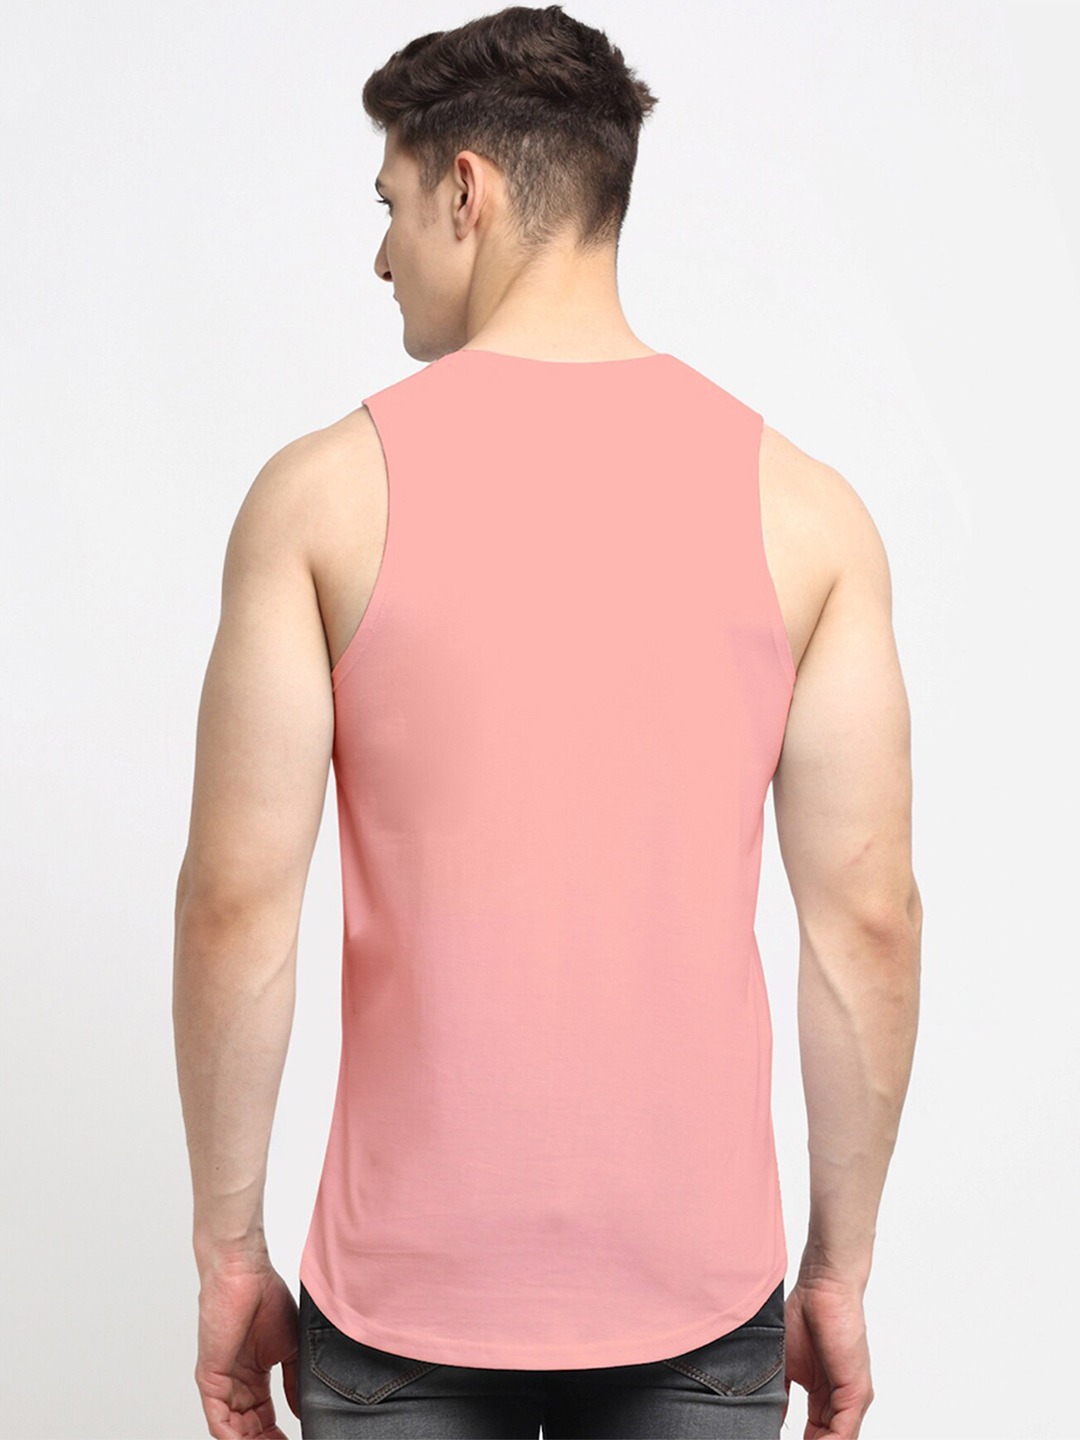 Clothing Innerwear Vests | Friskers Men Coral Printed Cotton Innerwear Vests - LU23153